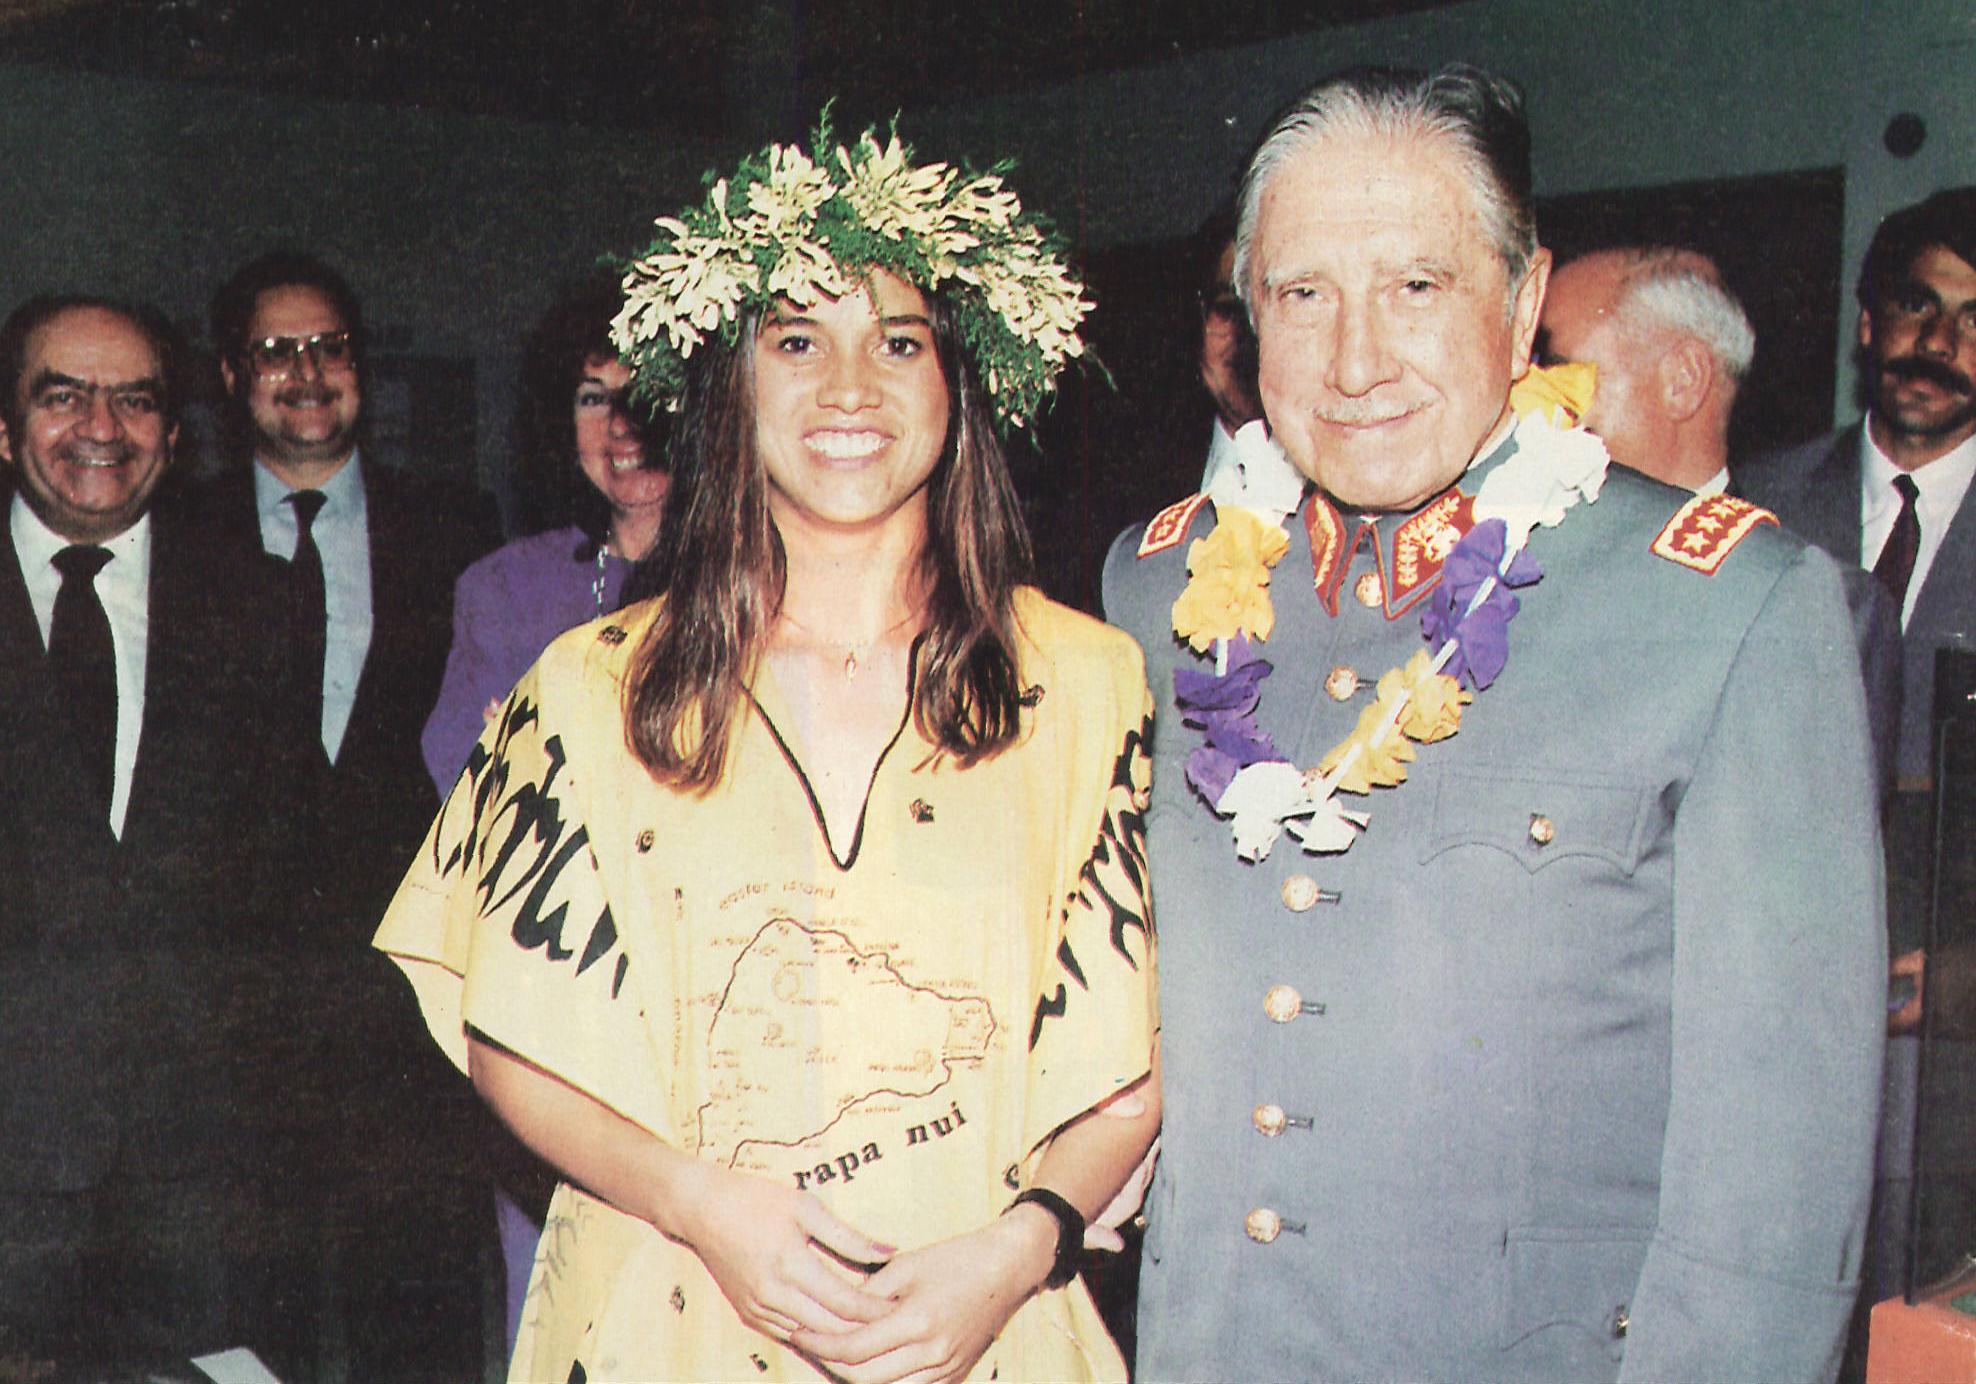 Генерал Пиночет с местной жительницей во время своего визита на о. Пасхи, Чили, 1990-е гг. На шее генерала висит цветочная гирлянда, характерная для островов Океании.